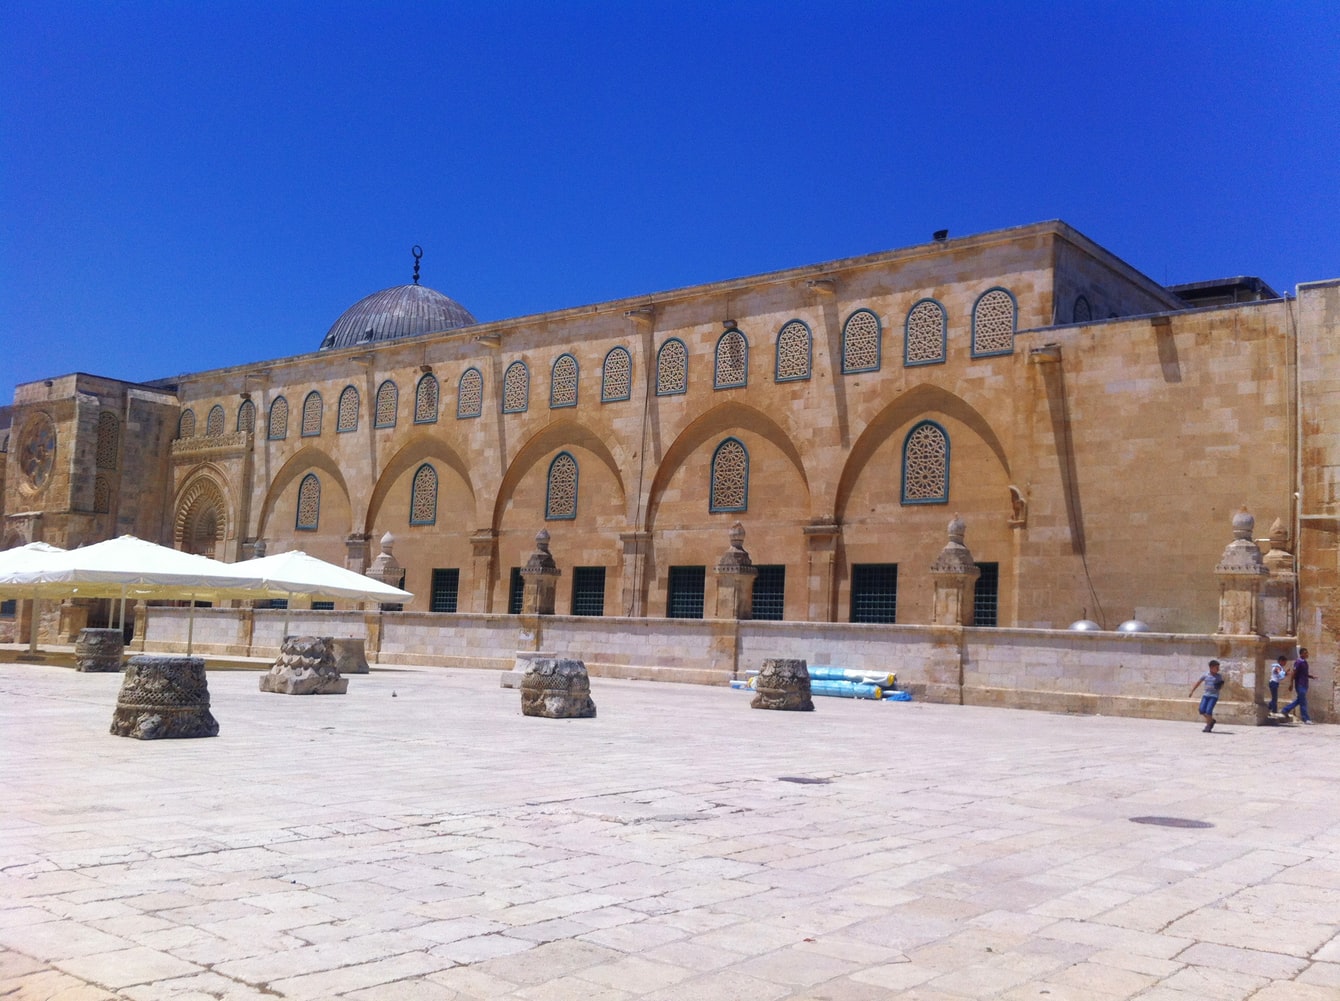 7 Fakta Masjid Al-Aqsa 1 fakta masjid al-aqsa